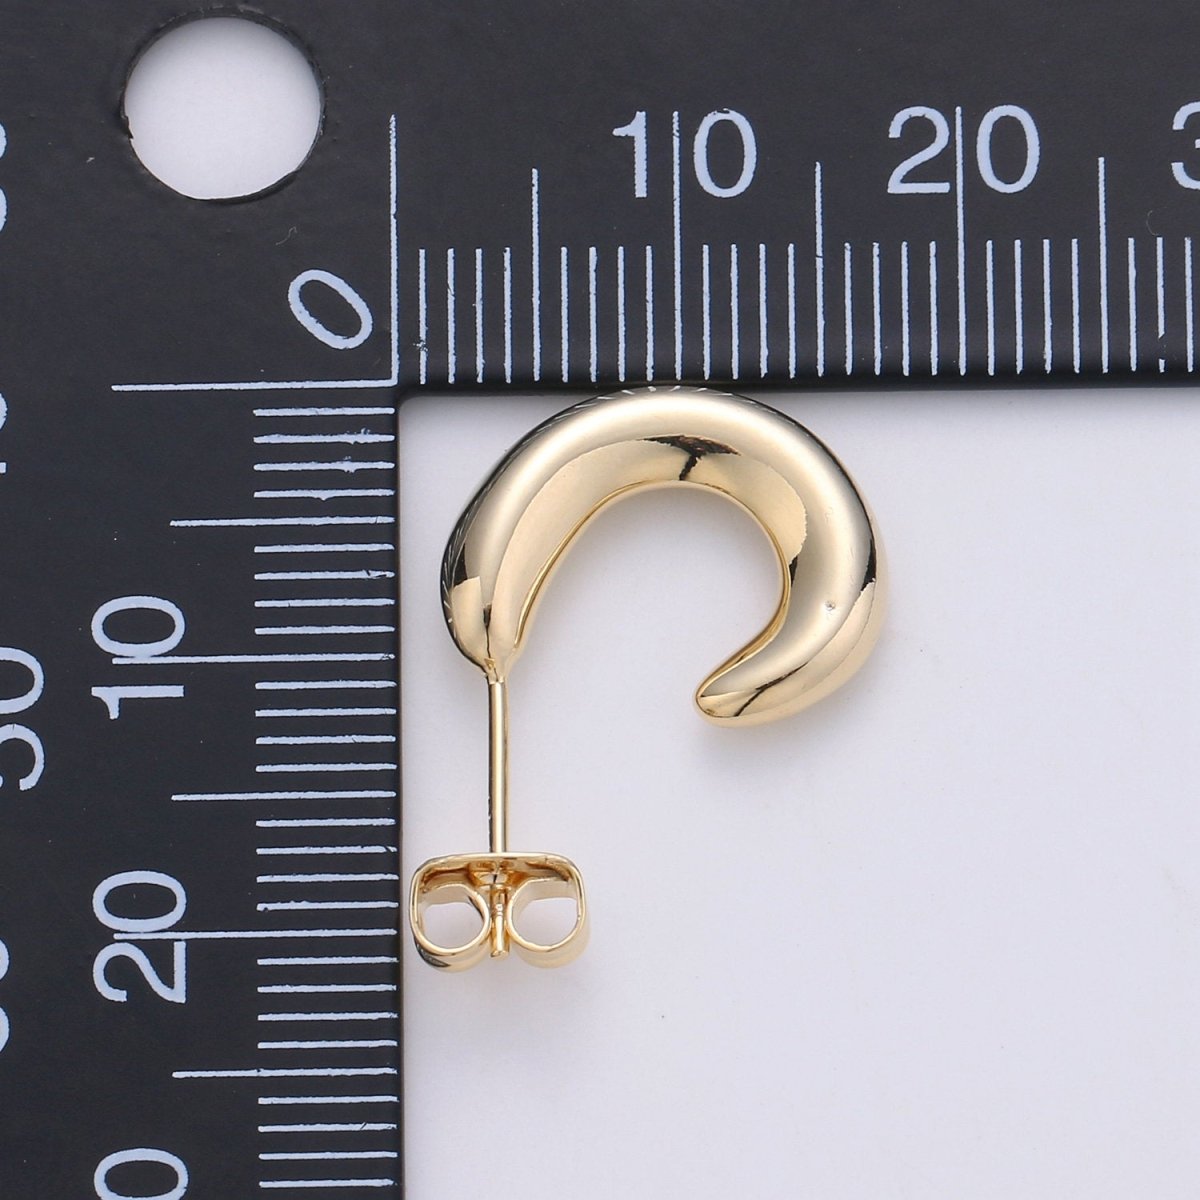 Chunky Gold Filled Hoop Earrings, Fat Hoop Earrings, Chubby Hoop Earrings, Gold Hoop Earrings statement earring | K-433 - DLUXCA